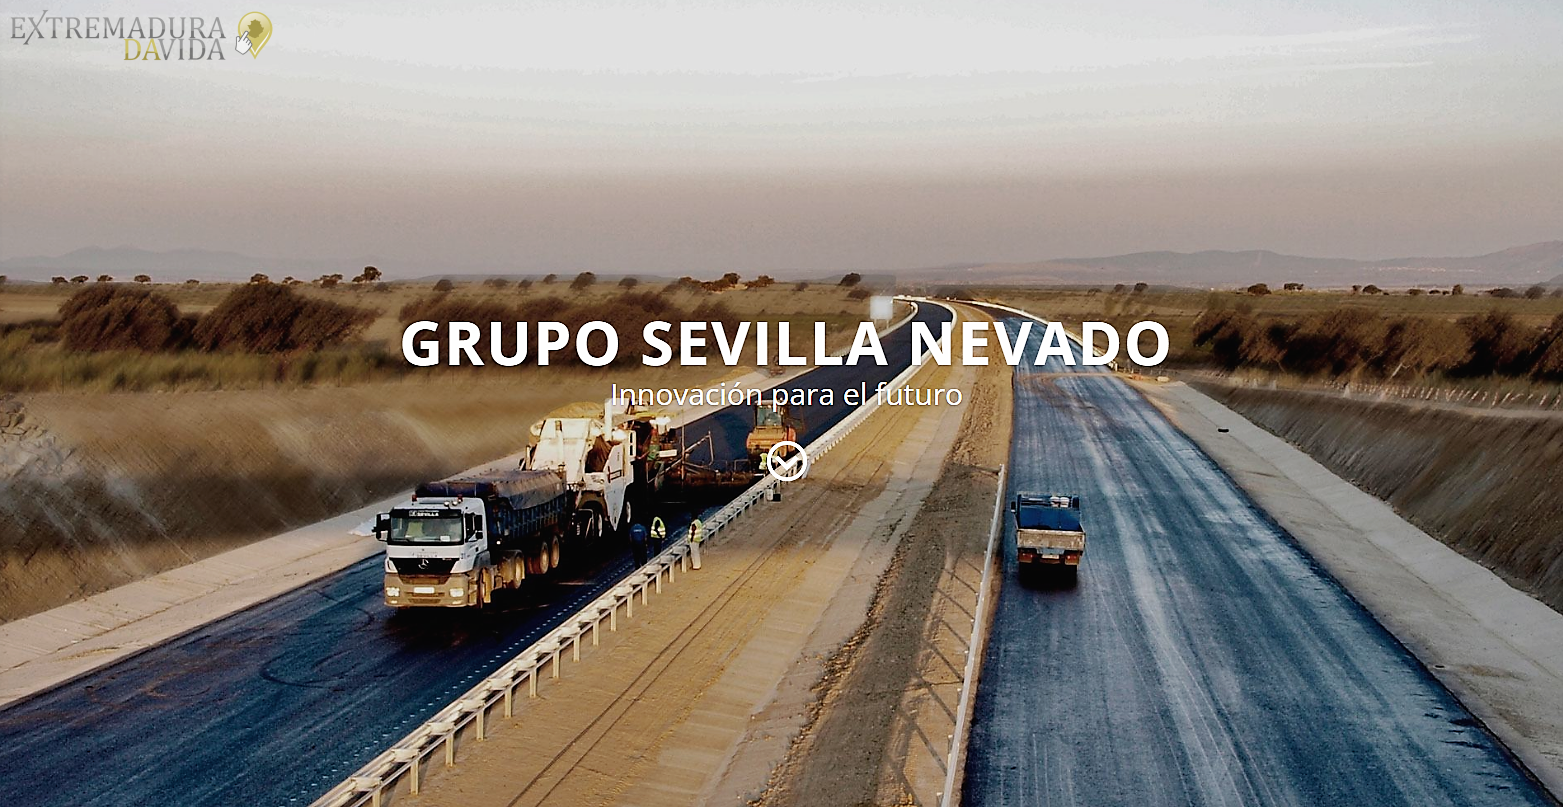 Construcciones Sevilla Nevado Extremadura